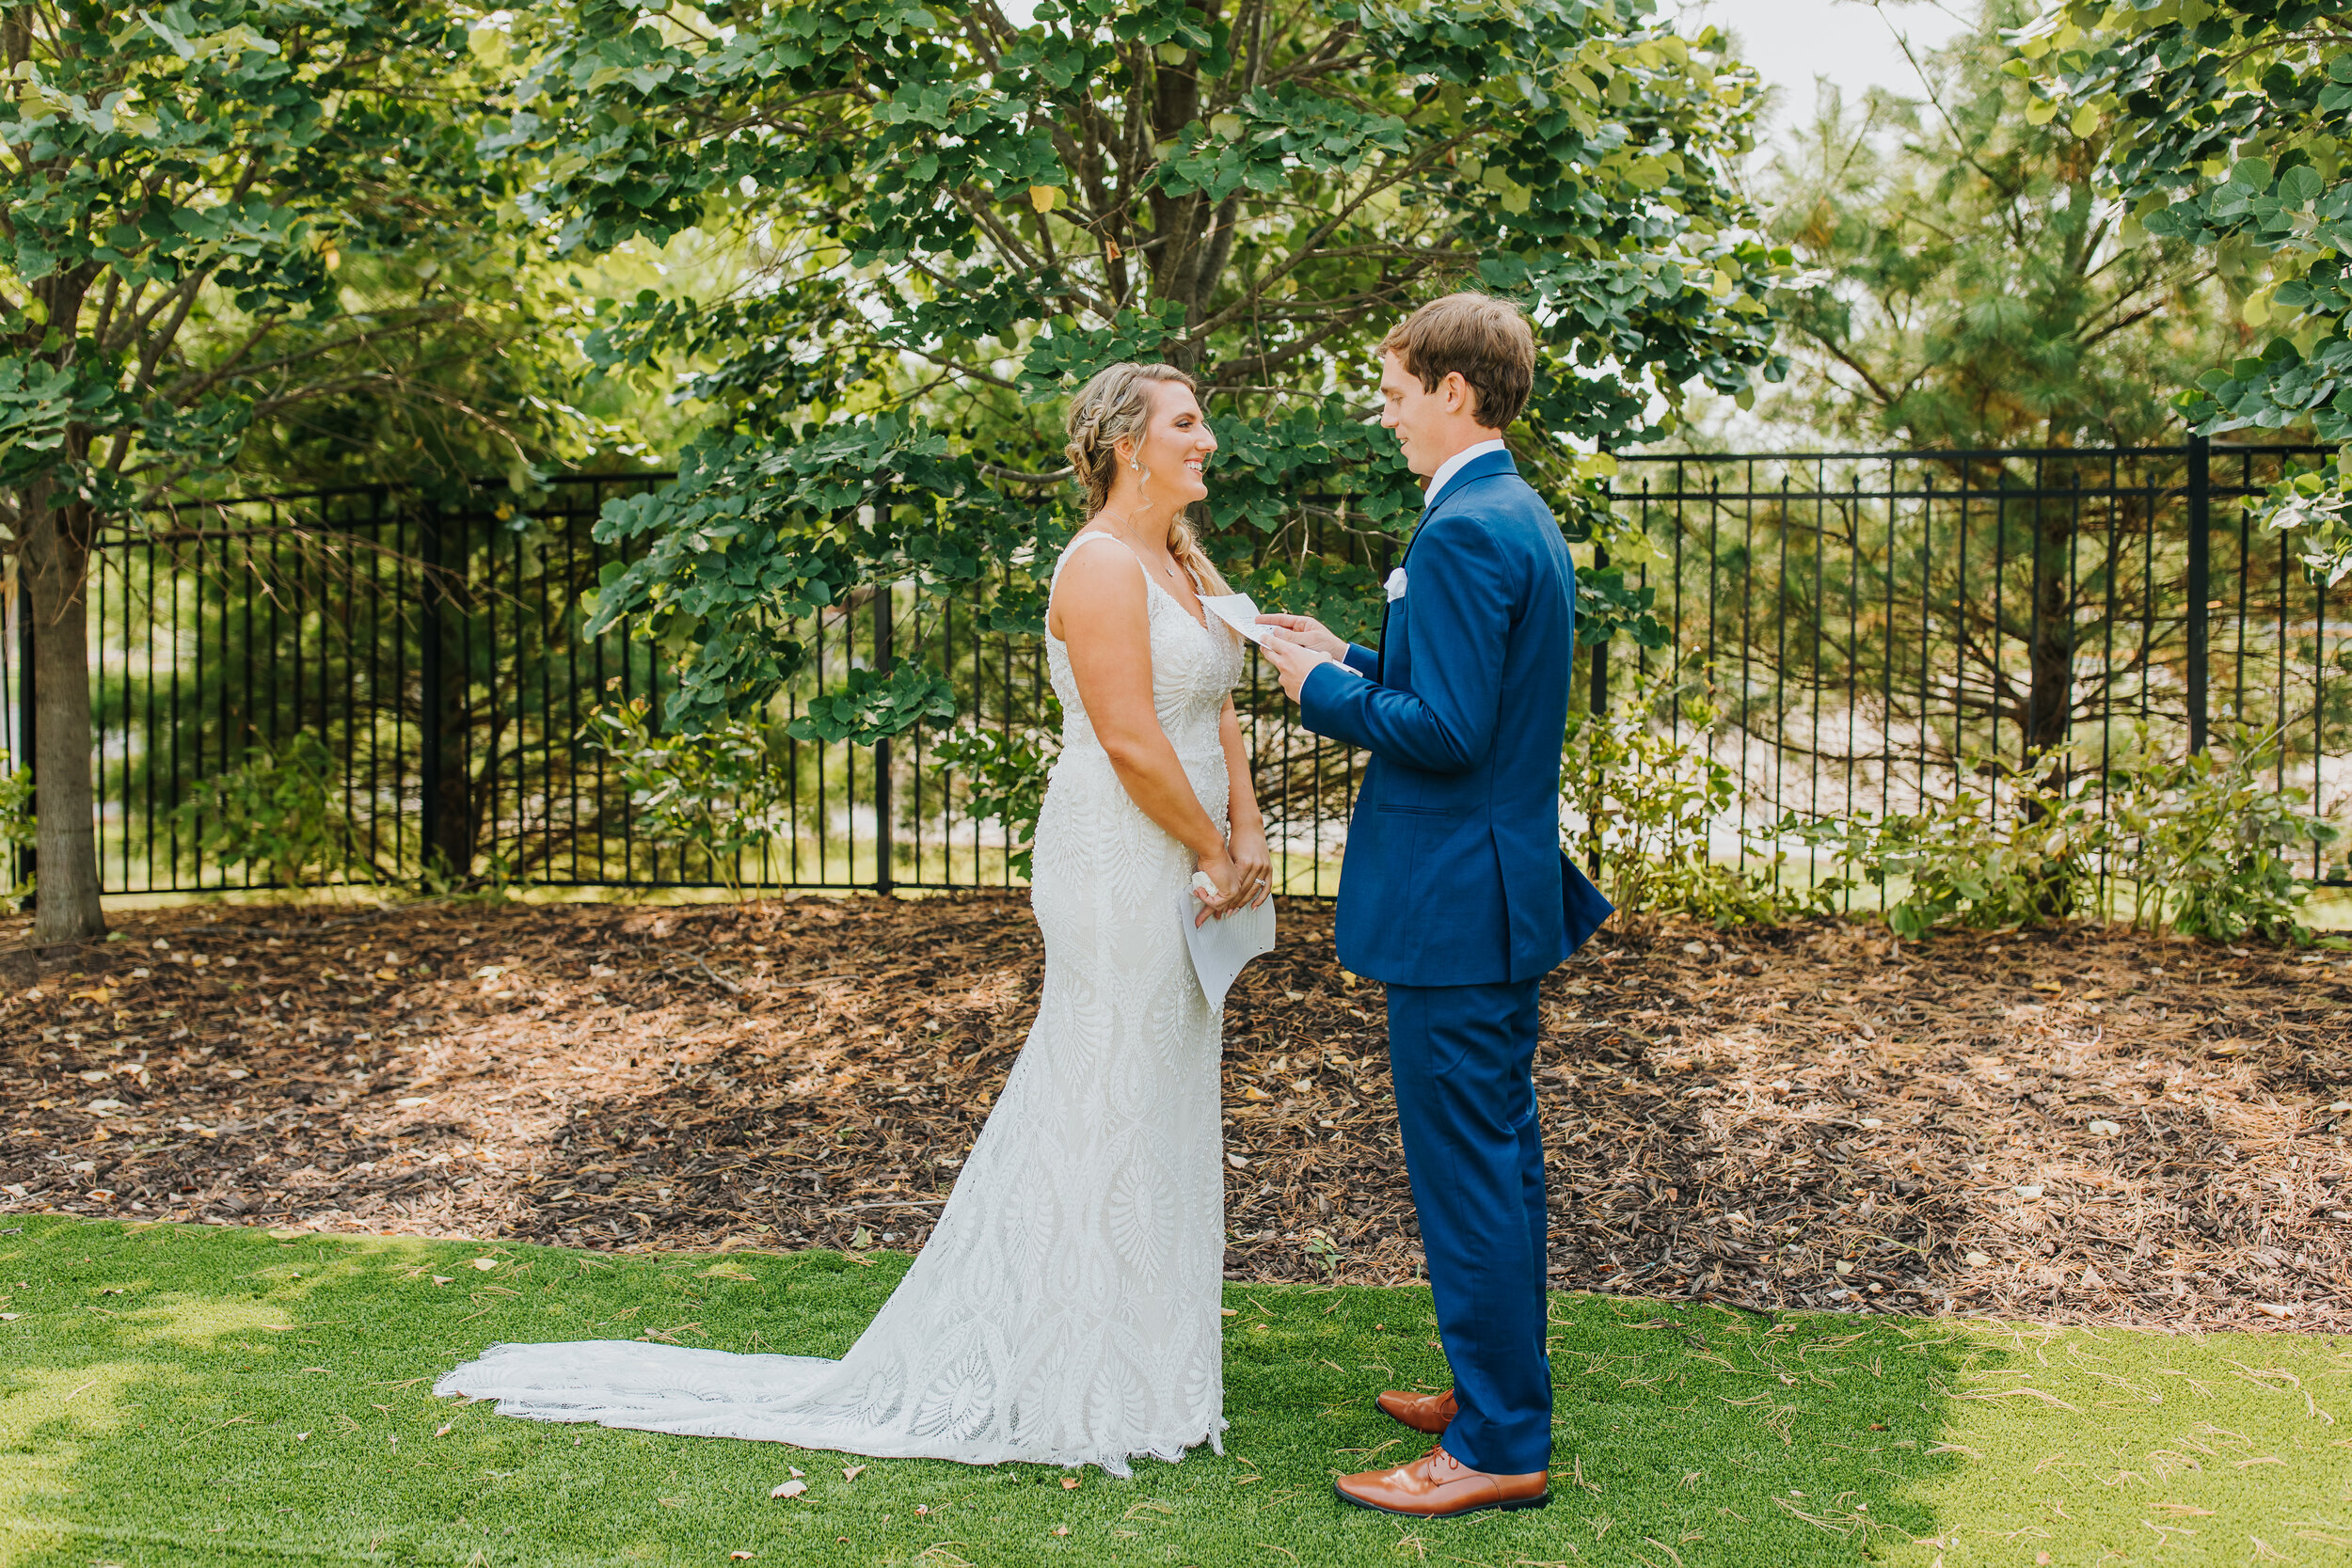 Ashton & Dan - Married - Nathaniel Jensen Photography - Omaha Nebraska Wedding Photographer-116.jpg